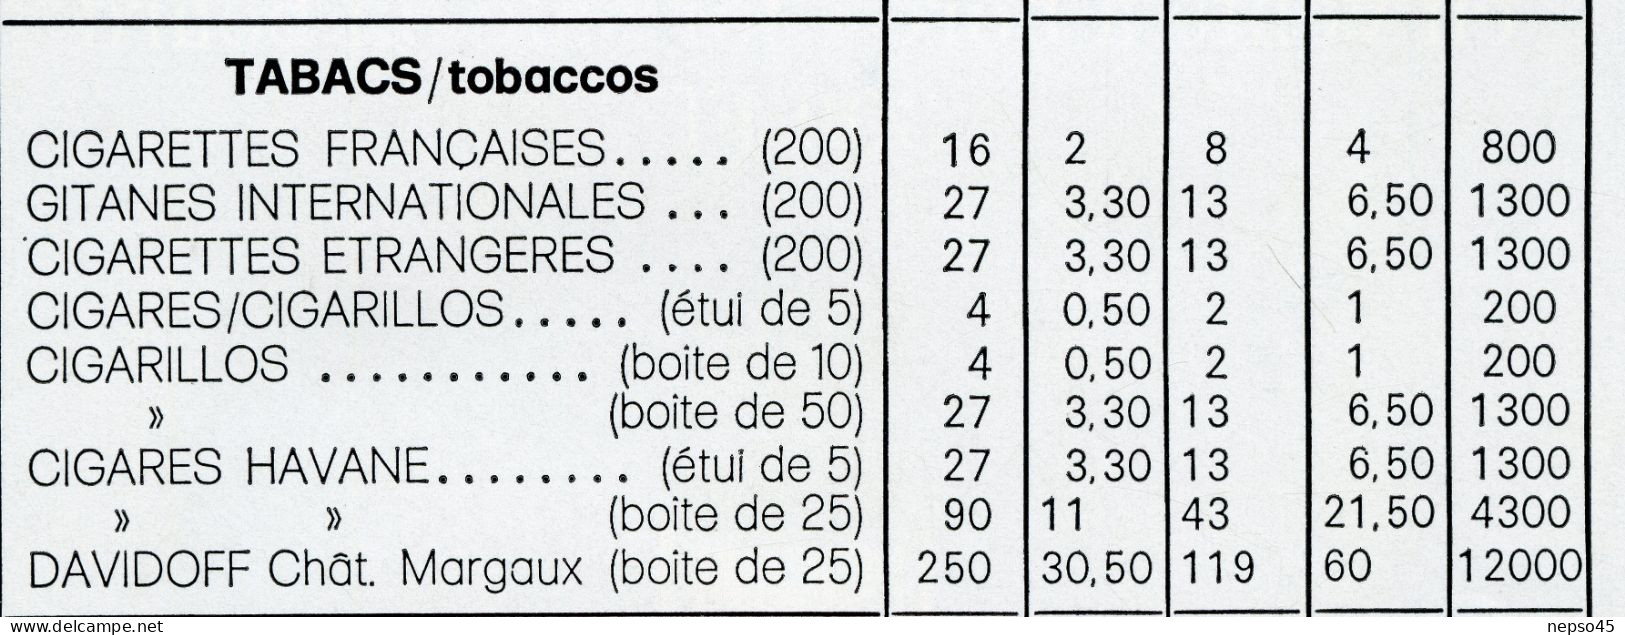 Air France.Tarif Des Prix à Bord.Articles De Paris.Tabacs.Boissons.Montre Richerds-Zeger Double Cadrans Fuseaux Horaires - Advertenties